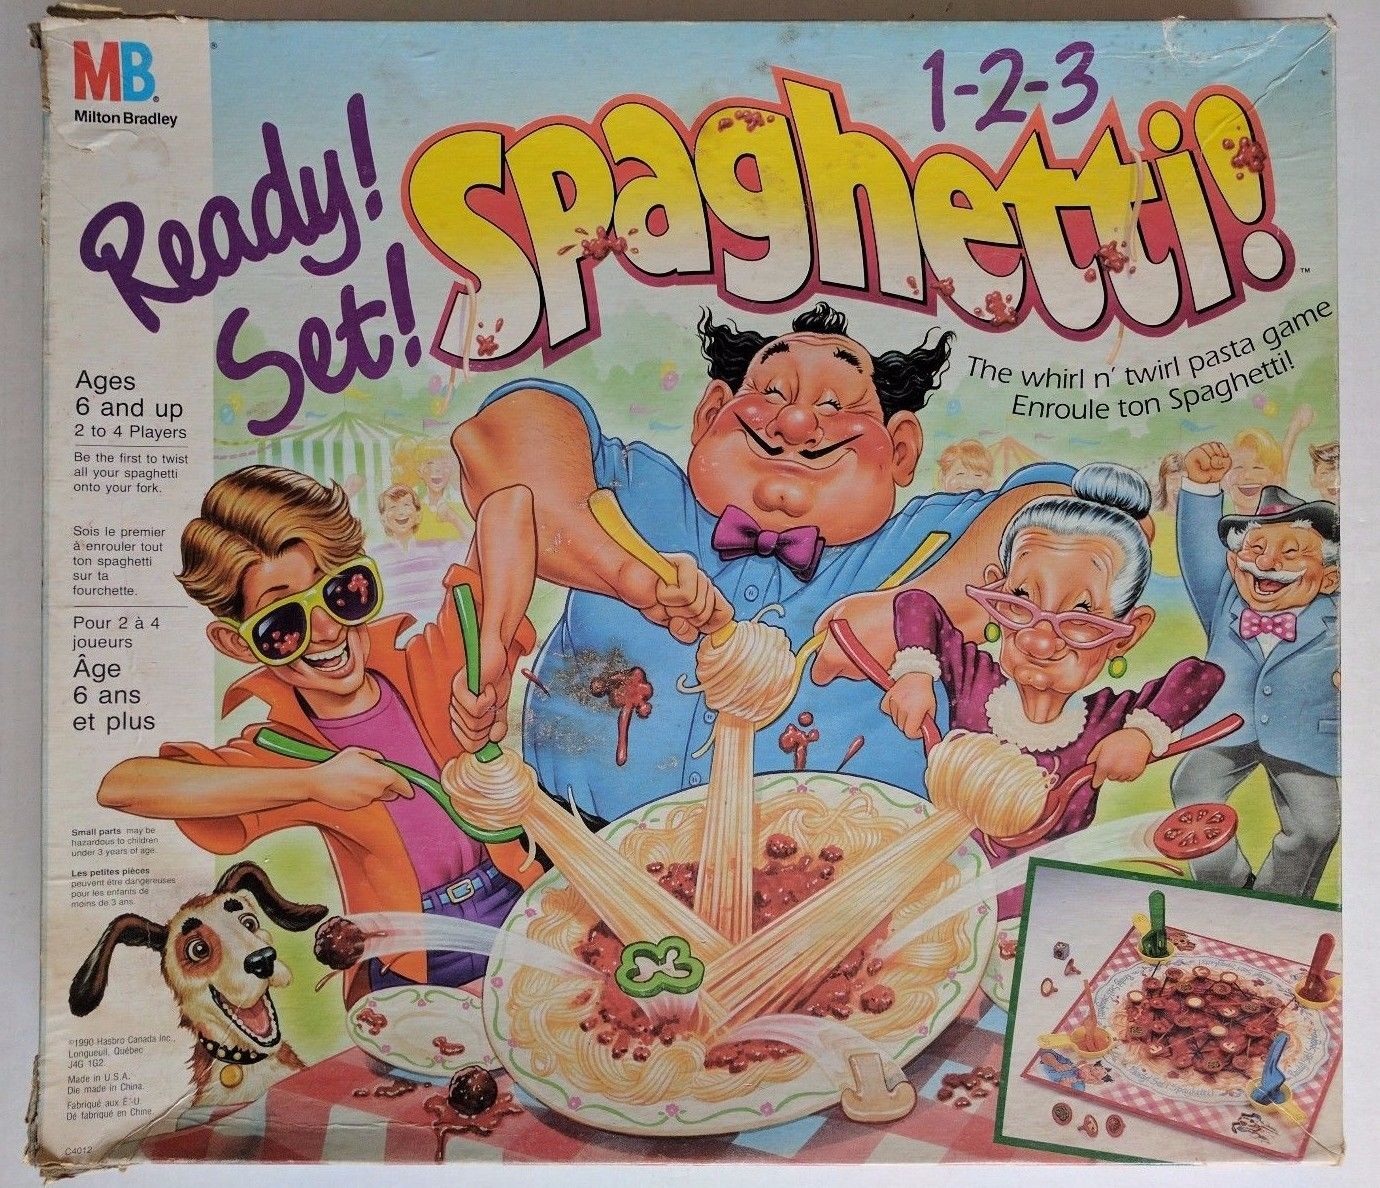 Игра спагетти играть